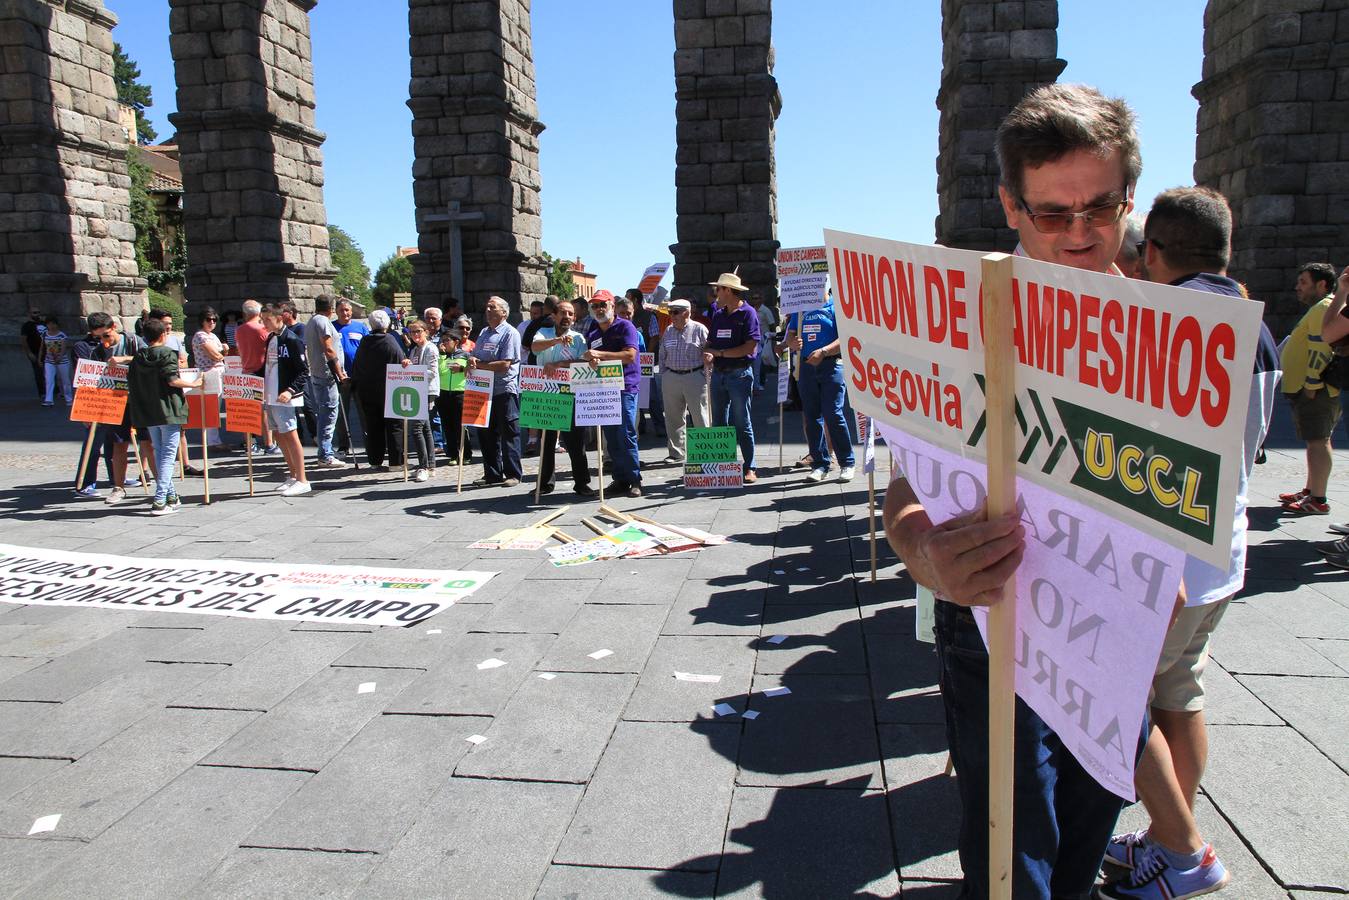 Protesta de ganaderos en Segovia